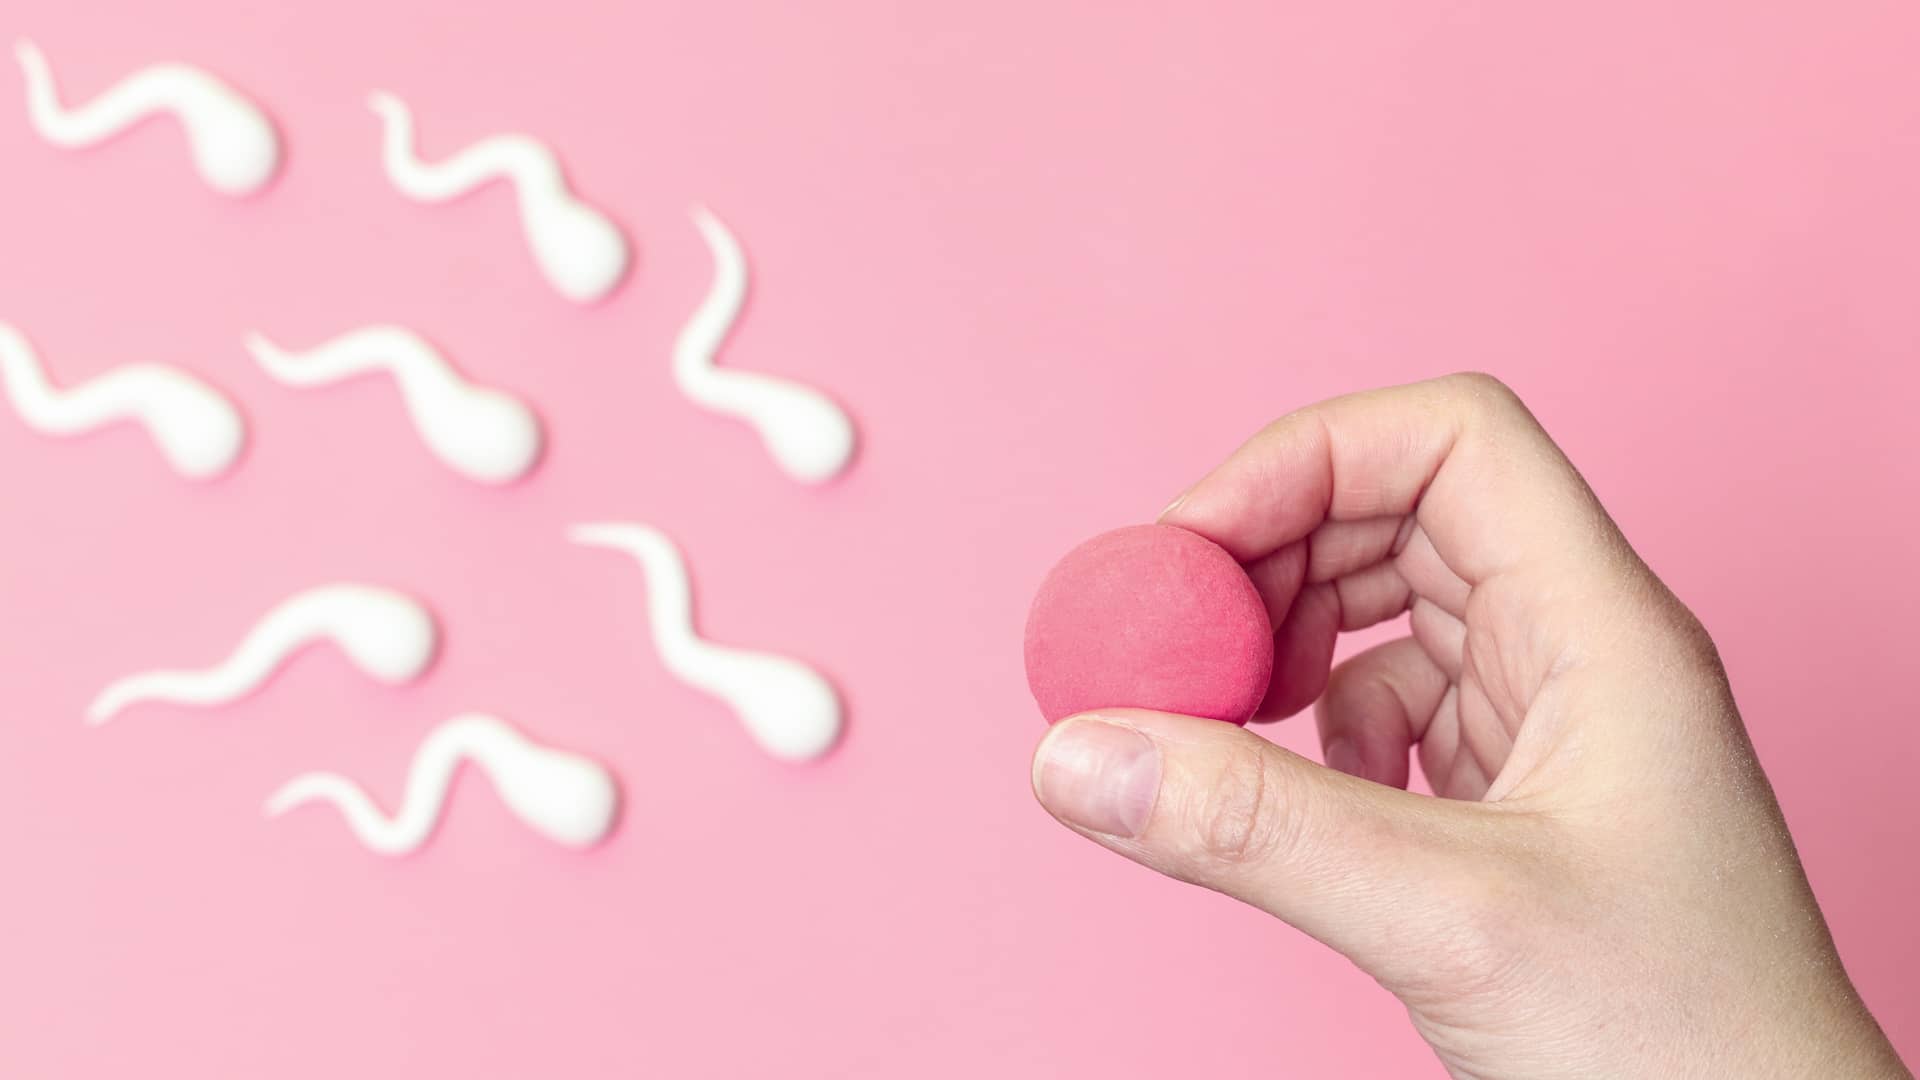 Una mano sujetando unos supuestos ovulo y espermatozoide para representa el proceso de la inseminación arificial